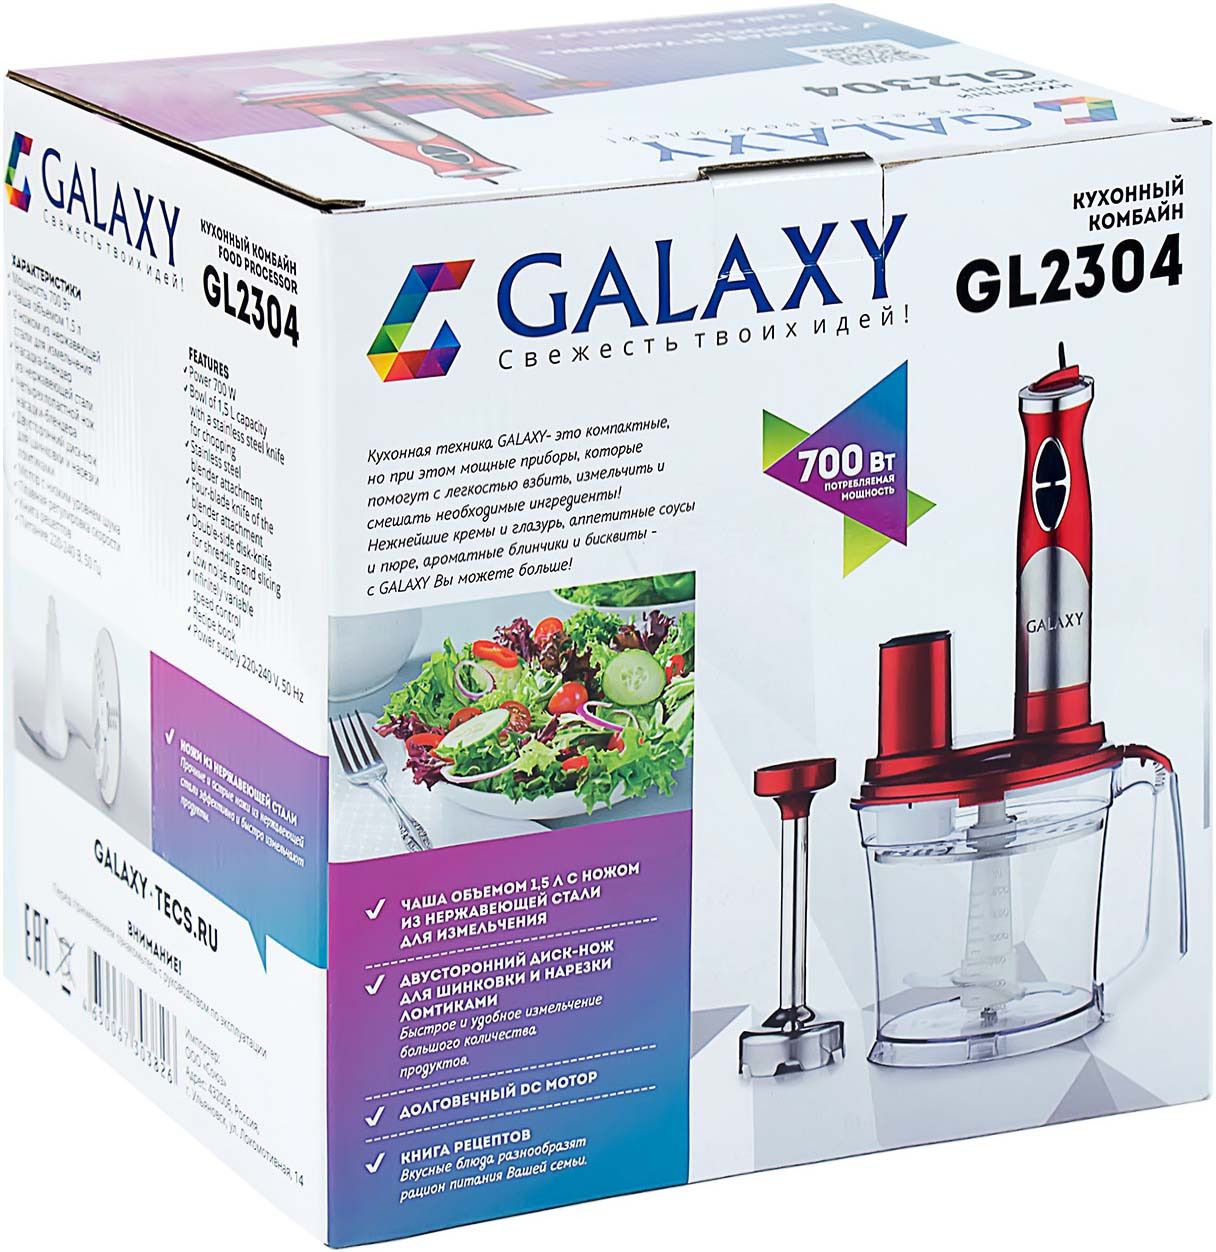   Galaxy GL 2304, : , 